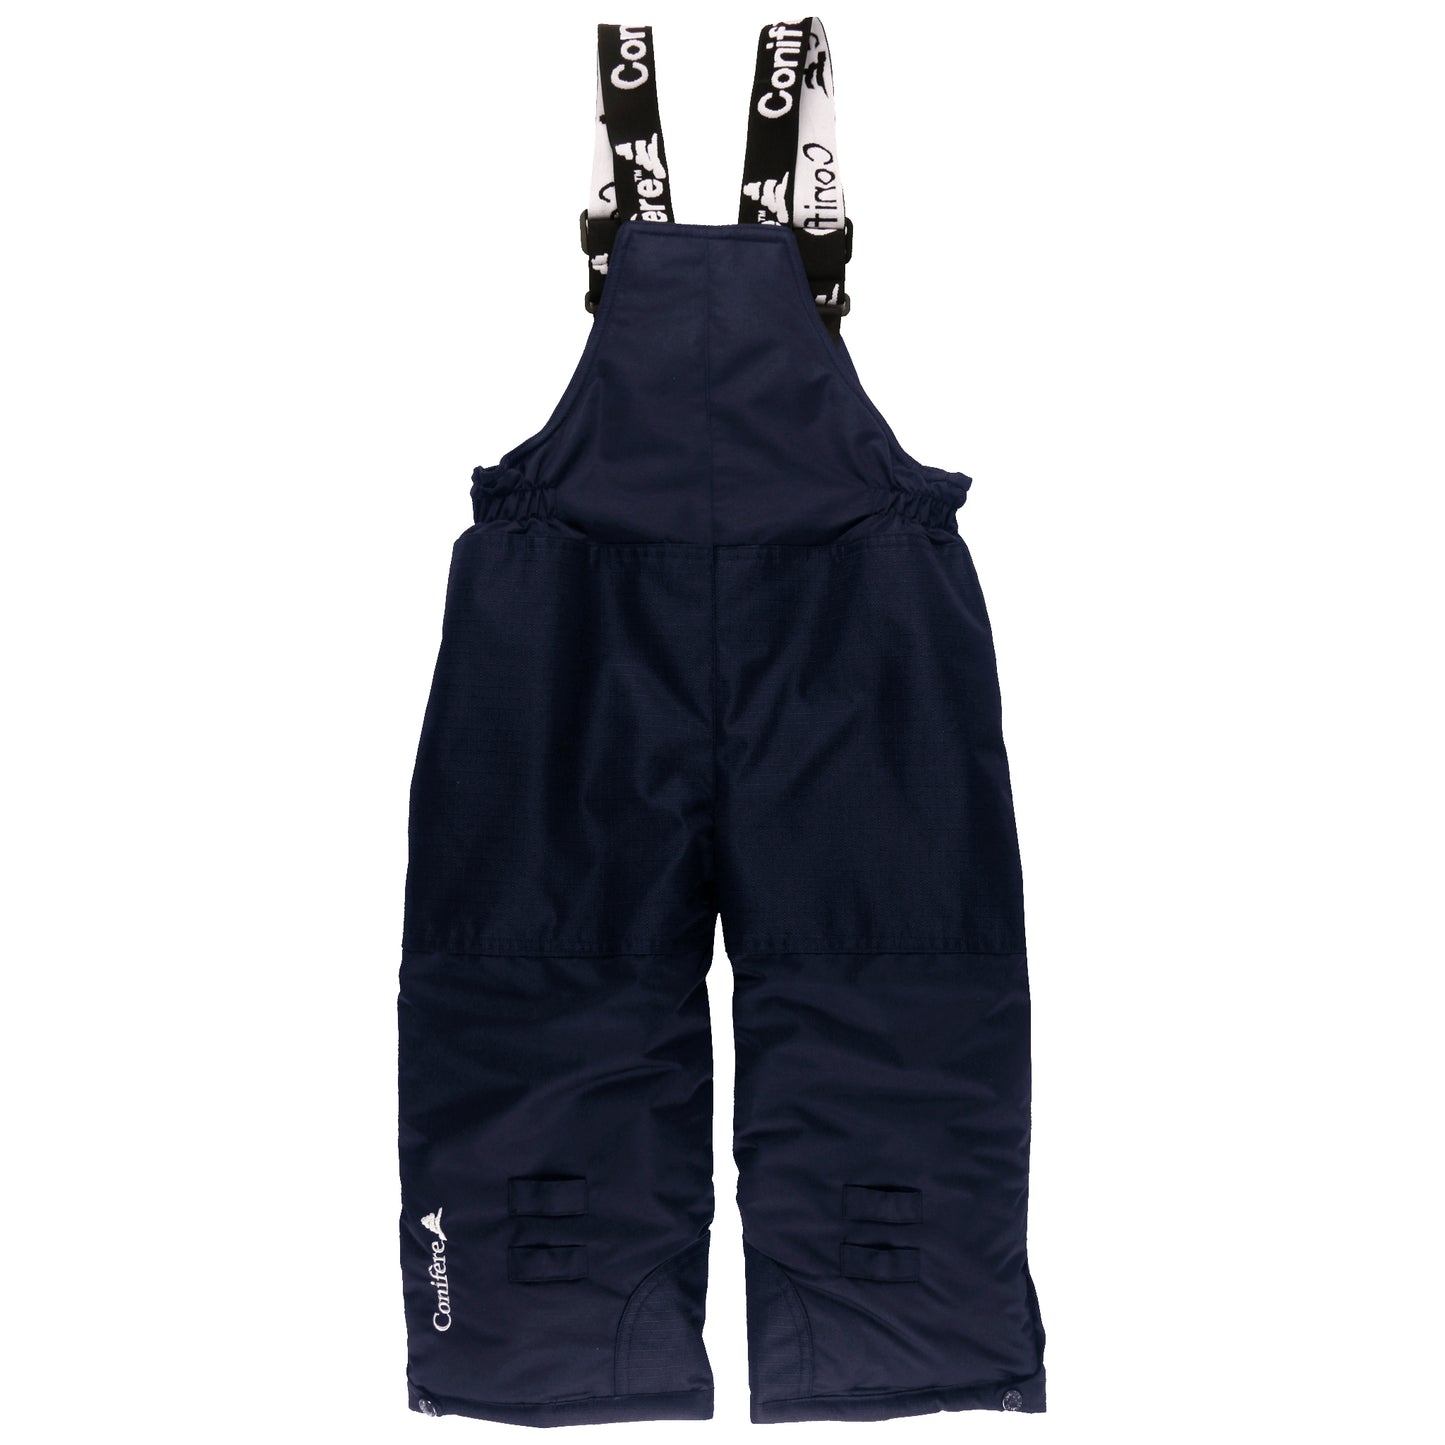 Navy Arcane Boys Snowsuit Set